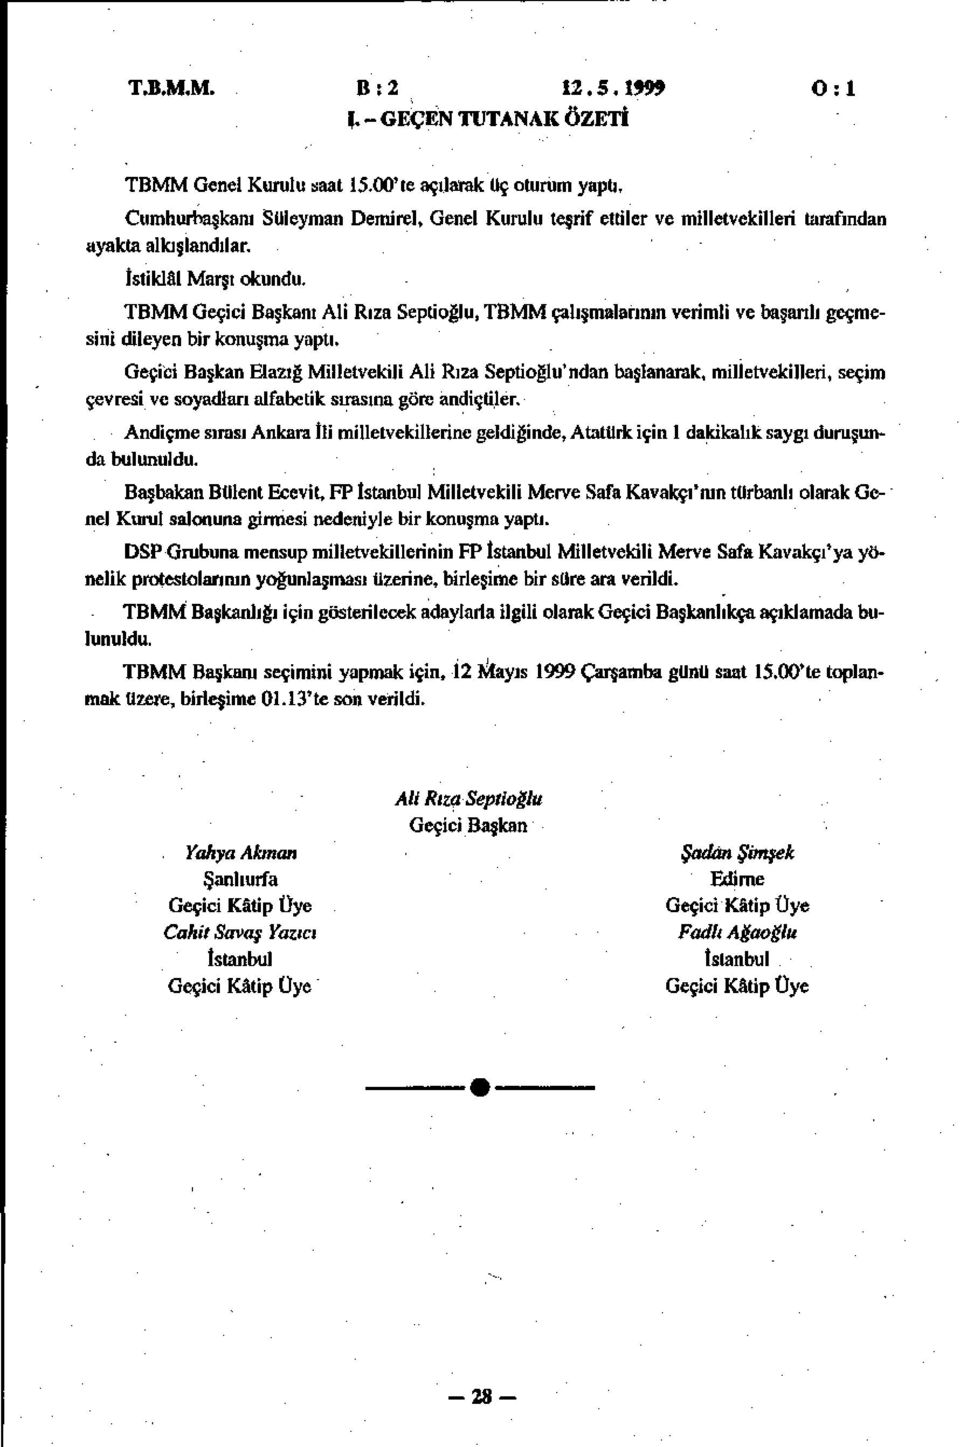 Geçici Başkan Elazığ Milletvekili Ali Rıza Septioğlu'ndan başlanarak, milletvekilleri, seçim çevresi ve soyadları alfabetik sırasına göre andiçtiler.